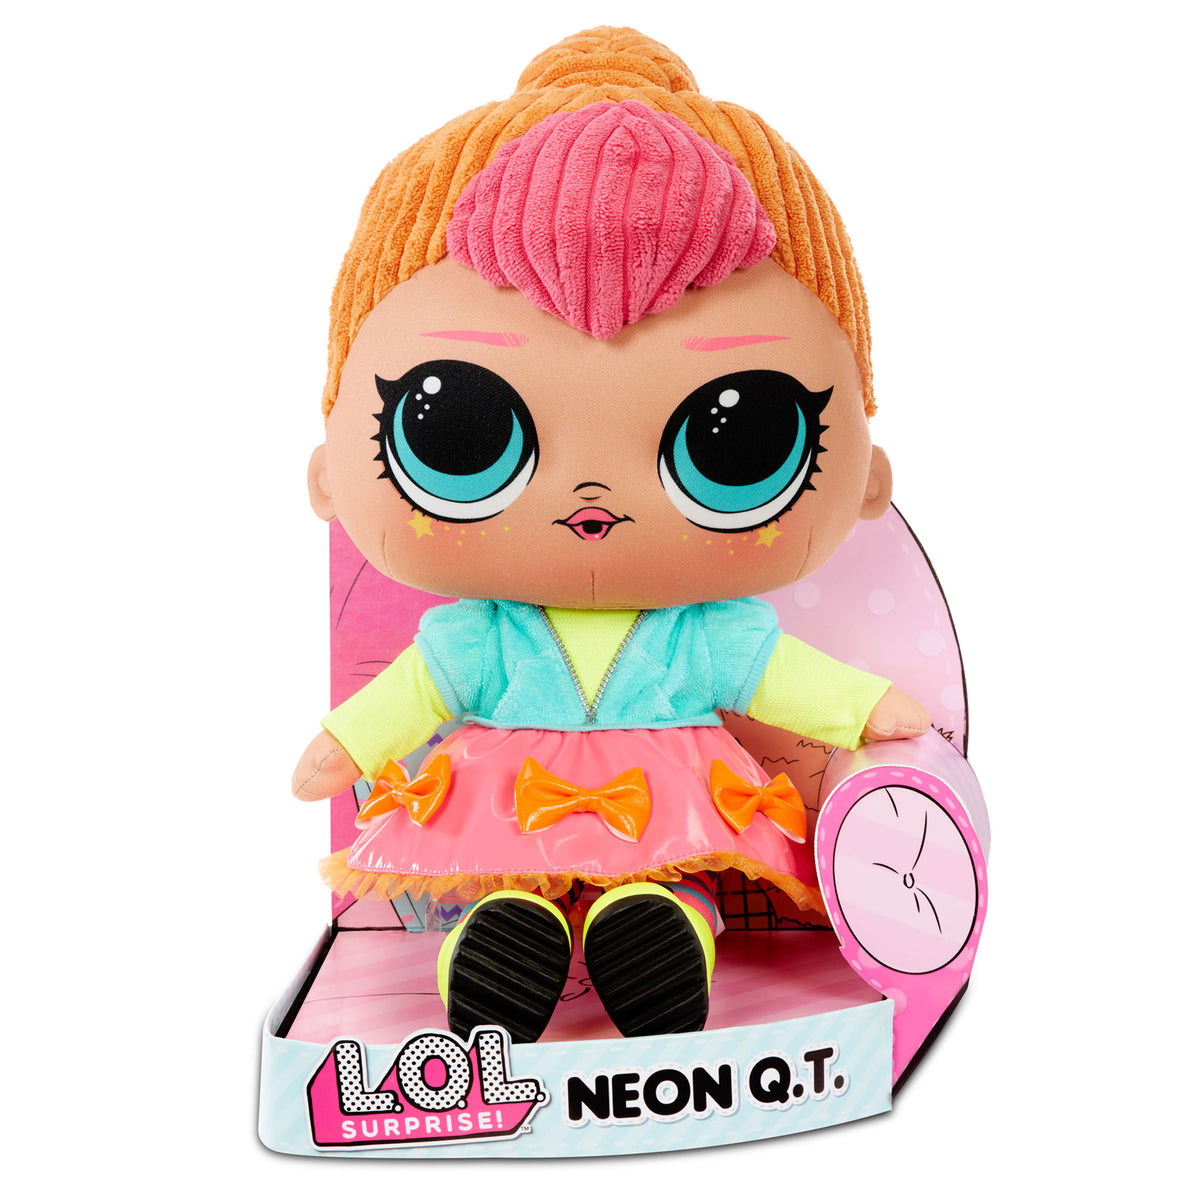 LOL Surprise Neon Q.T. - Huggable, Soft Plush Doll – L.O.L. Surprise